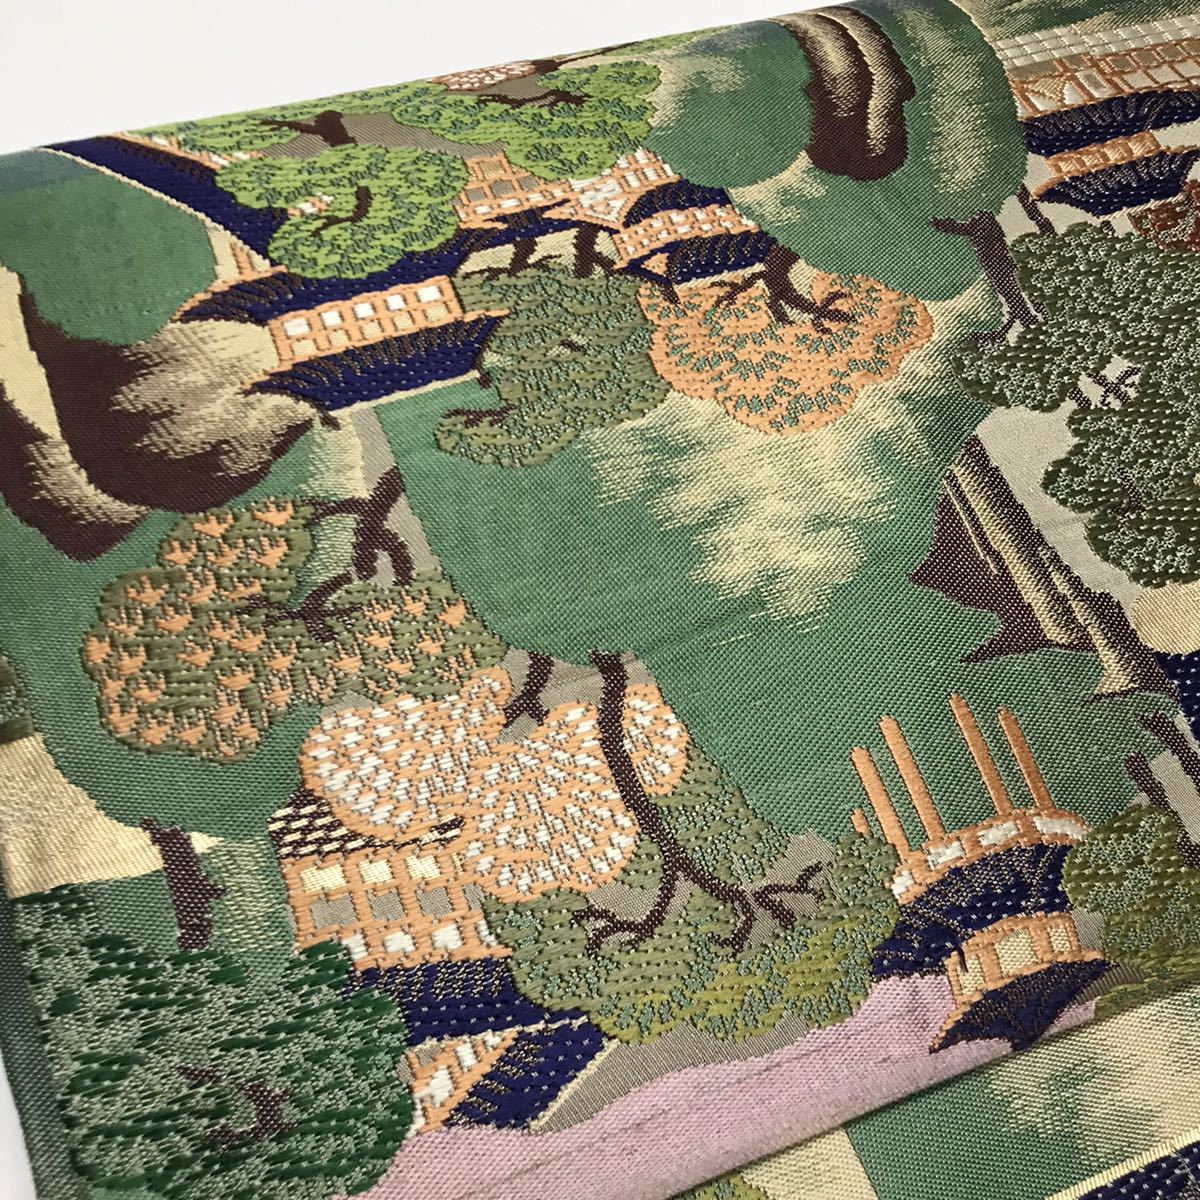 B109 maru obi пейзаж map переделка рукоделие ткань украшение ткань времена . старый . старый ткань античный гобелен инструмент для проволоки wa